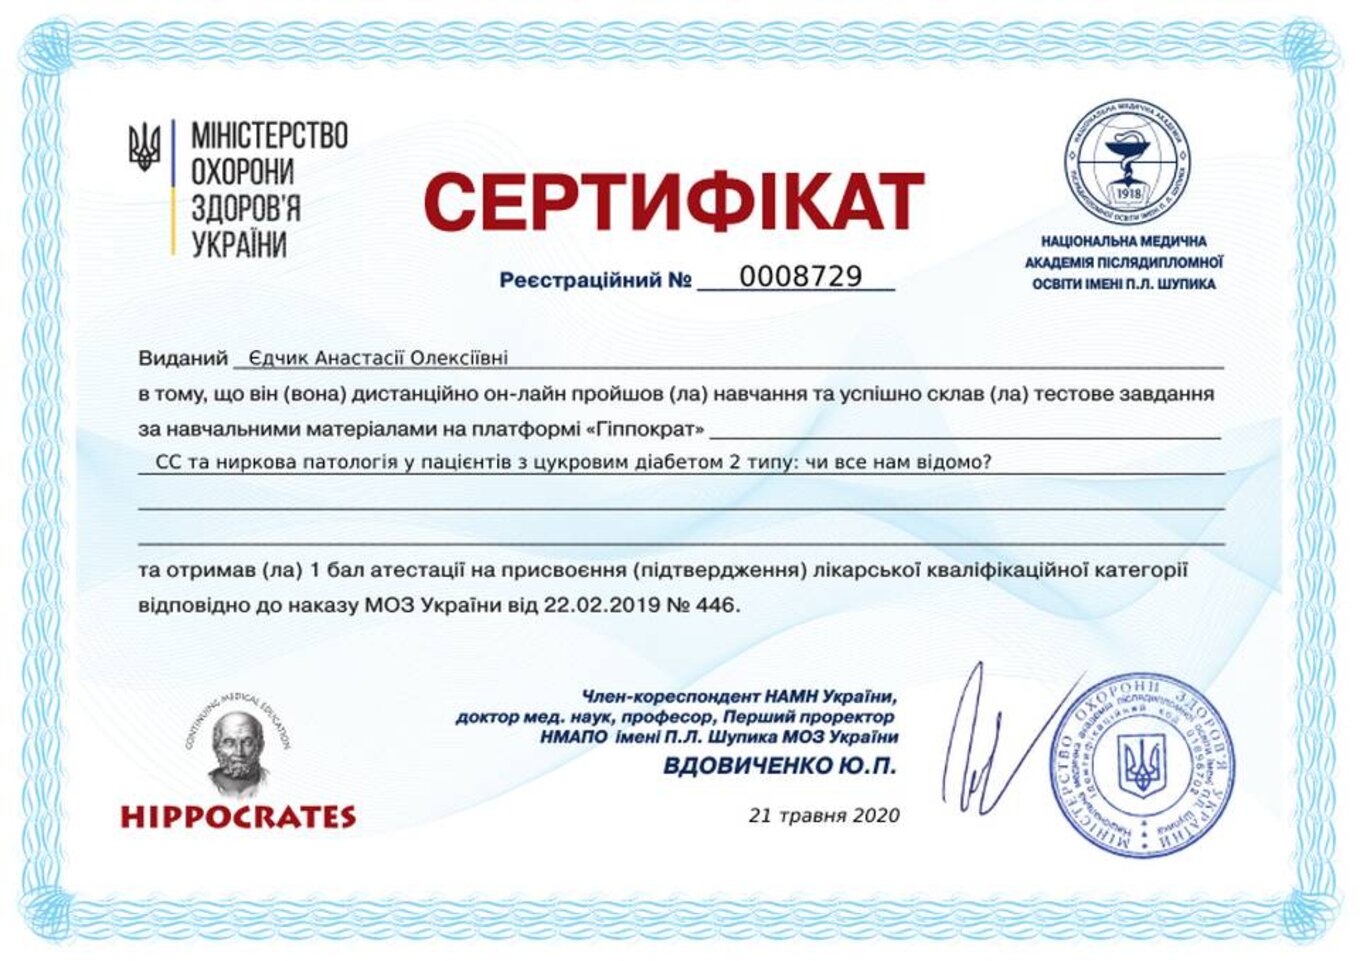 certificates/yedchik-anastasiya-oleksiyivna/erc-edchik-cert-69.jpg